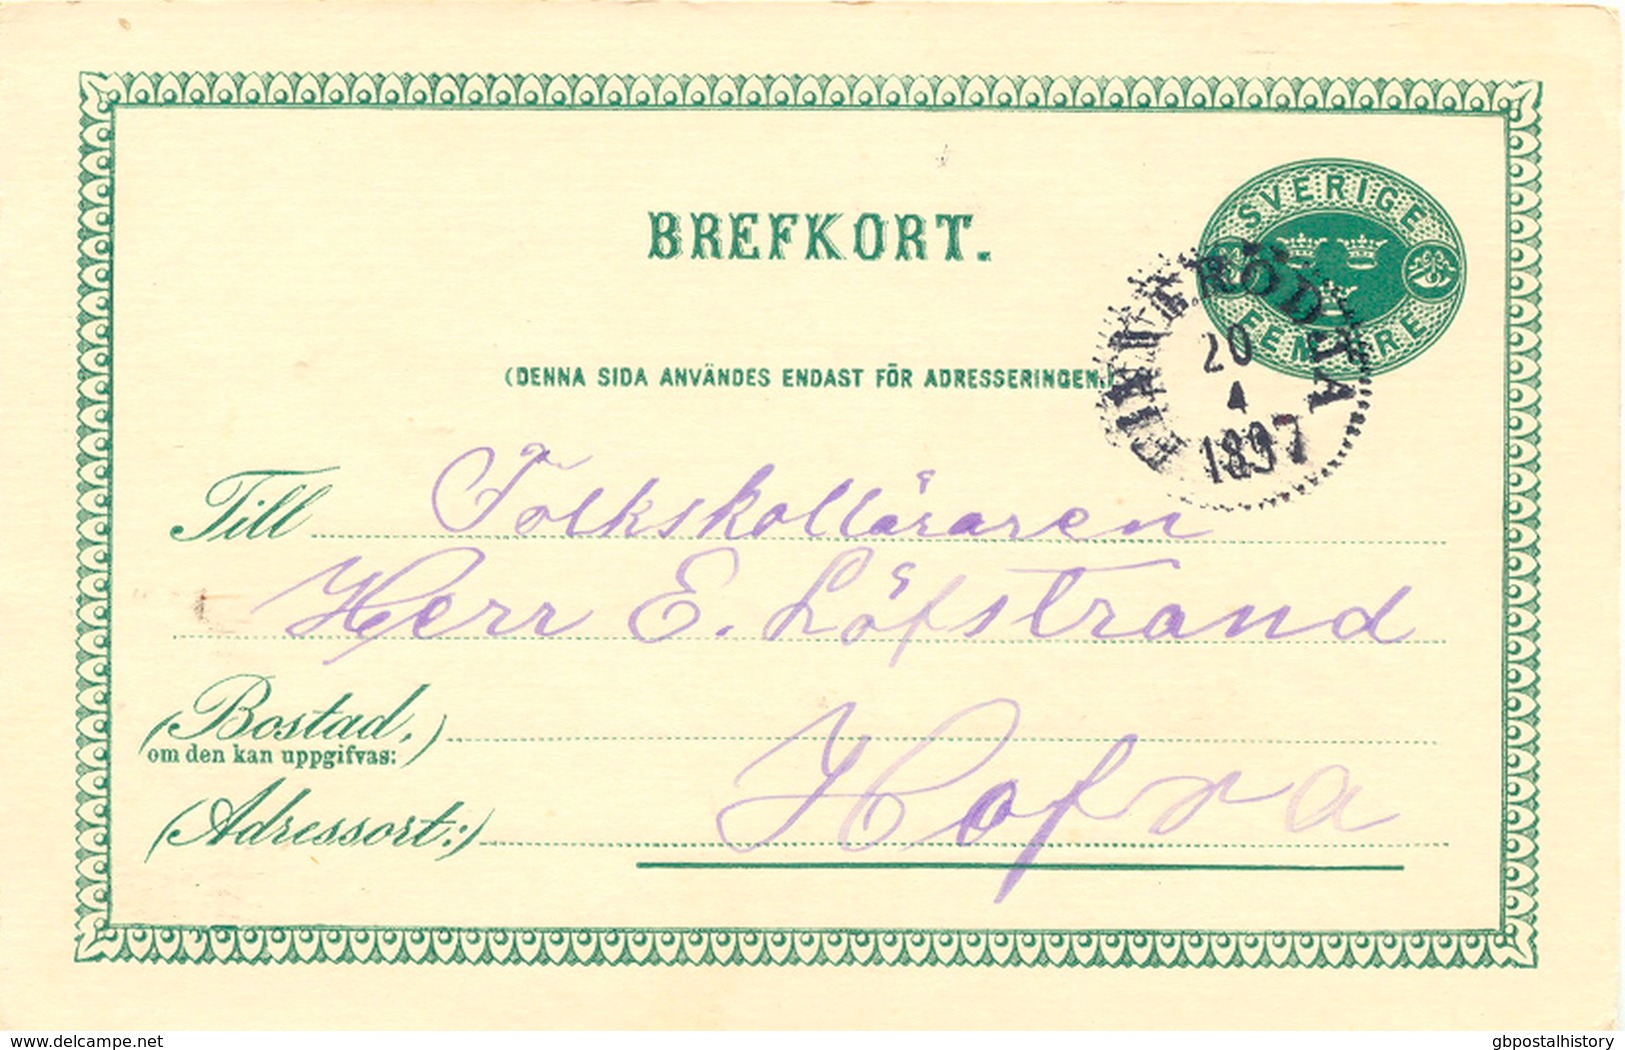 SCHWEDEN 1897, "FINNERÖDJA" K1 Glasklar A. 5 (FEM) Öre Grün GA-Postkarte, Kab. - 1872-1891 Ringtyp